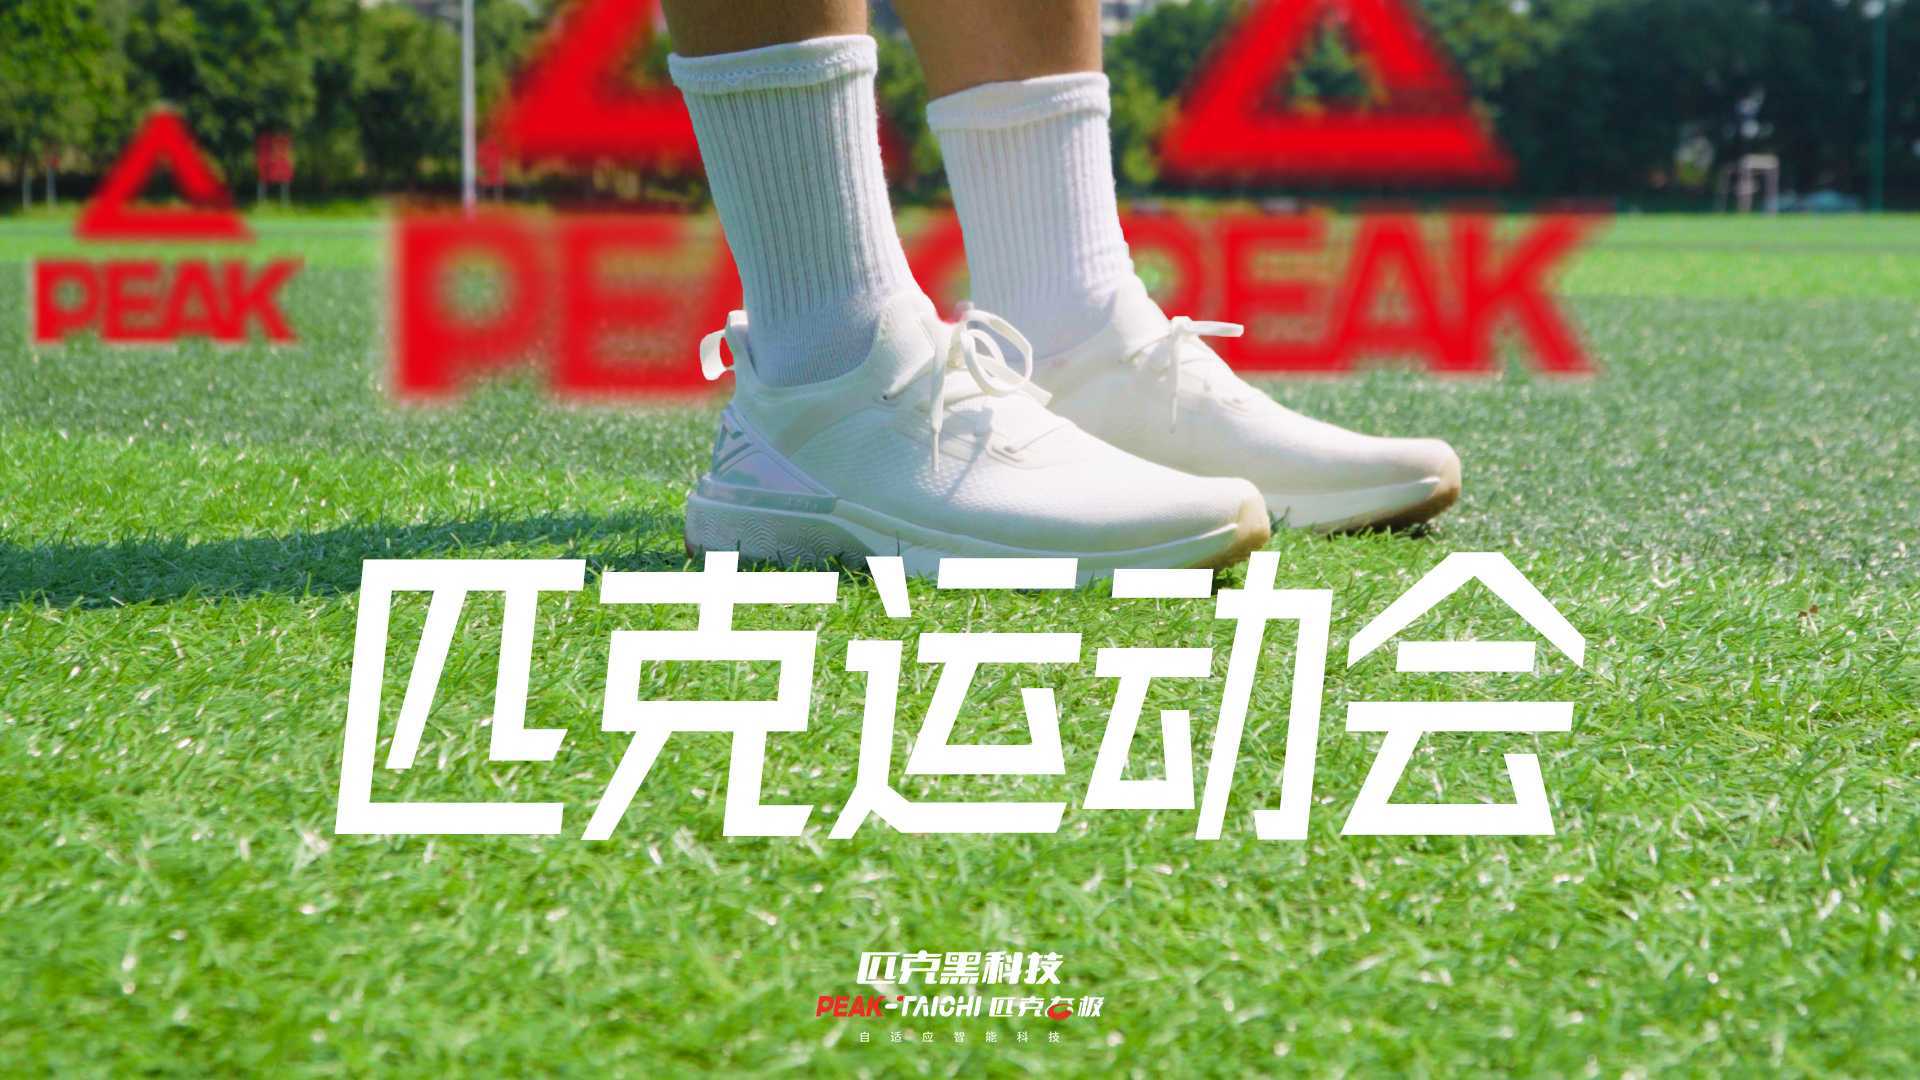 匹克态极4.0运动跑鞋 创意沙雕广告《匹克运动会》